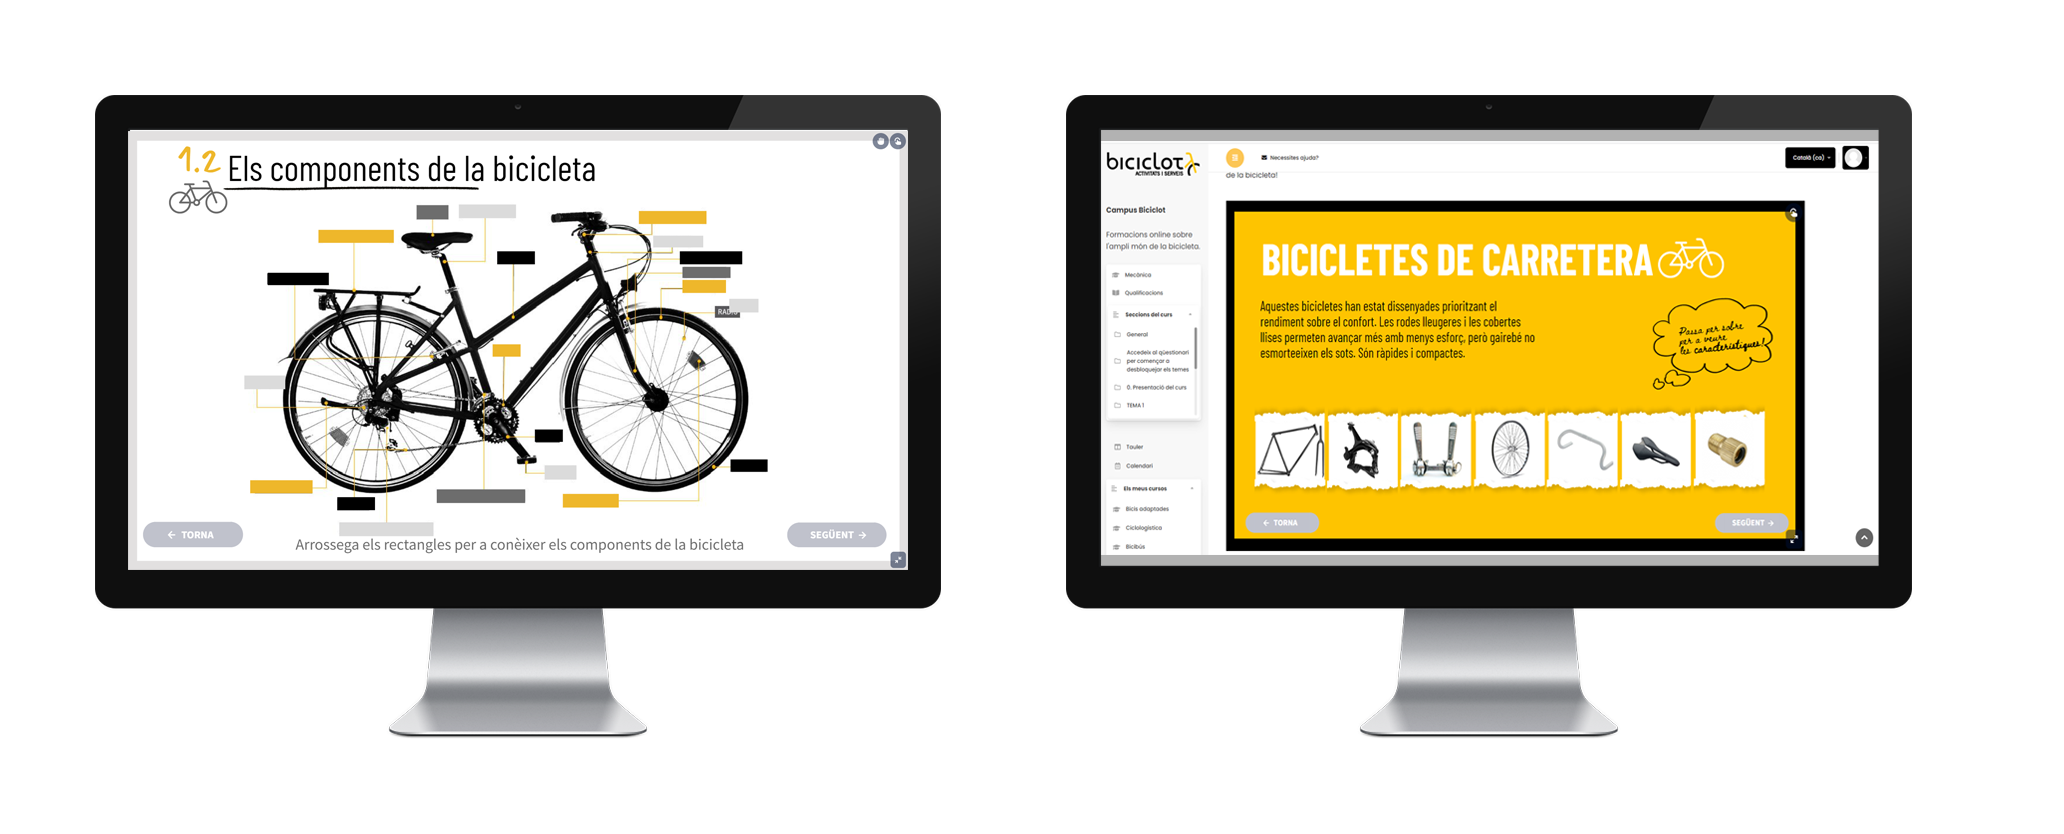 disseny formacions online per al projecte Institut de la bici